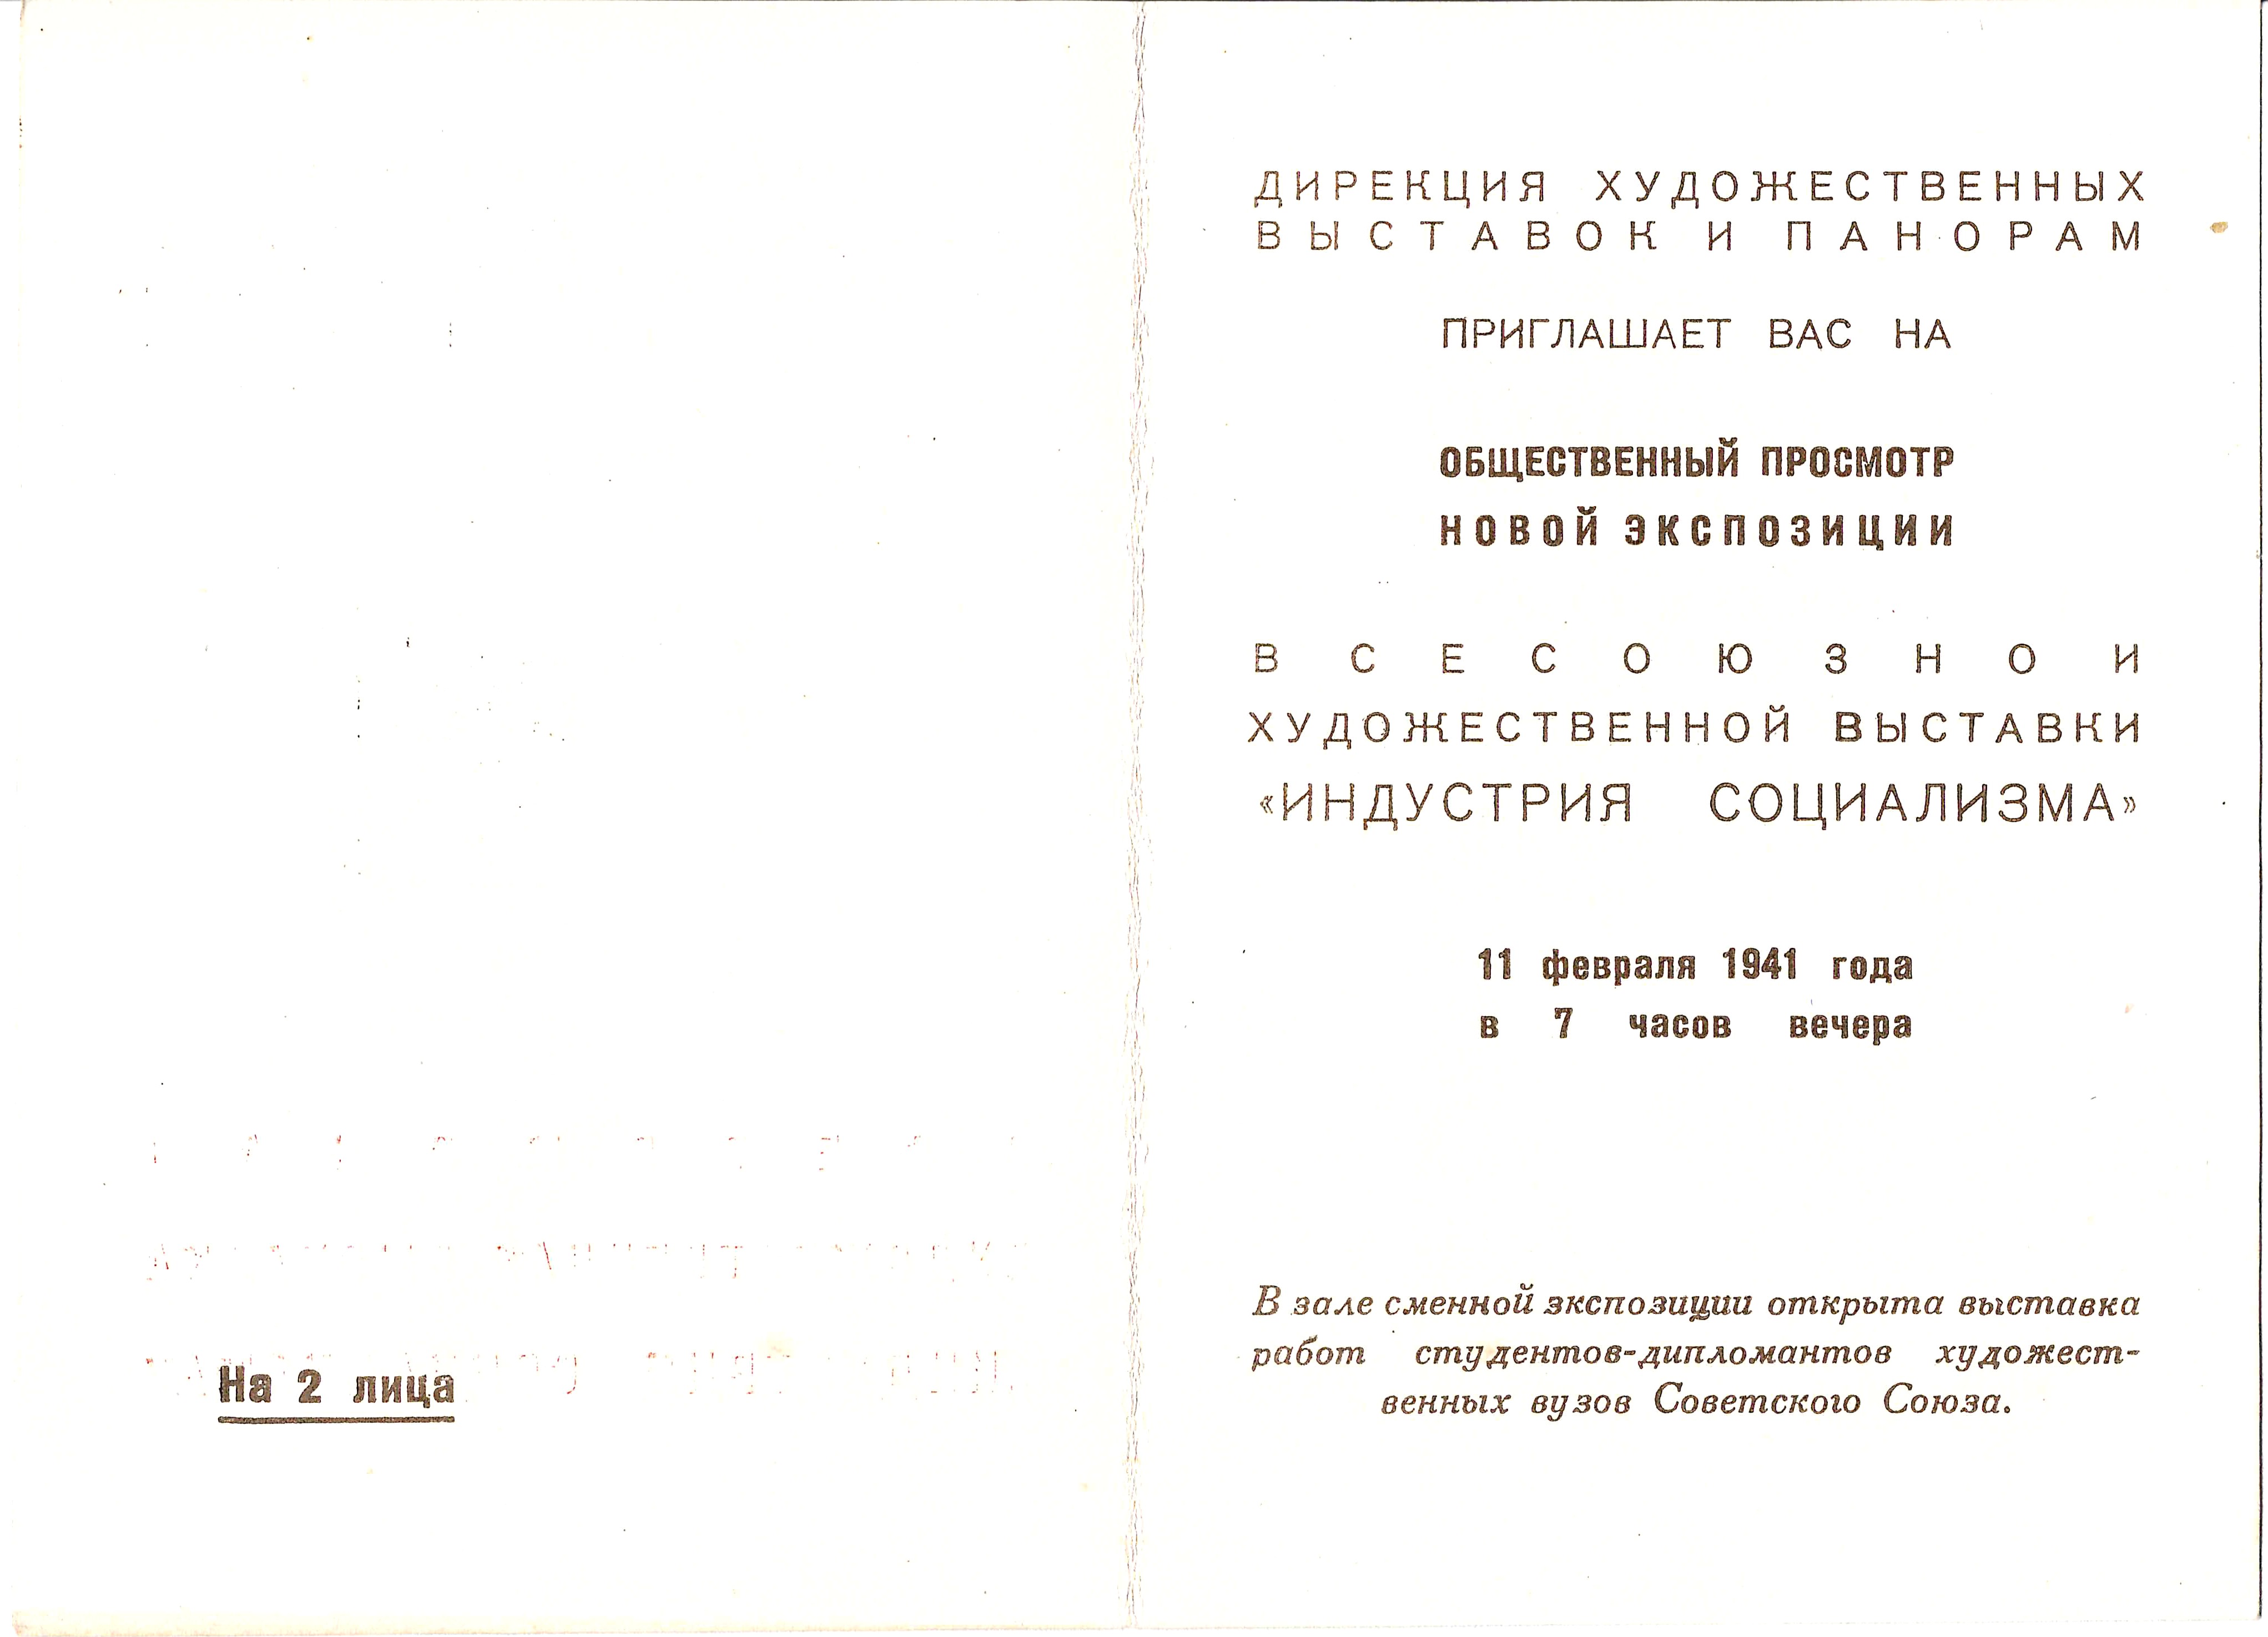 Приглашение на общественный просмотр всесоюзной художественной выставки «Индустрия социализма» 11 февраля 1941 года.